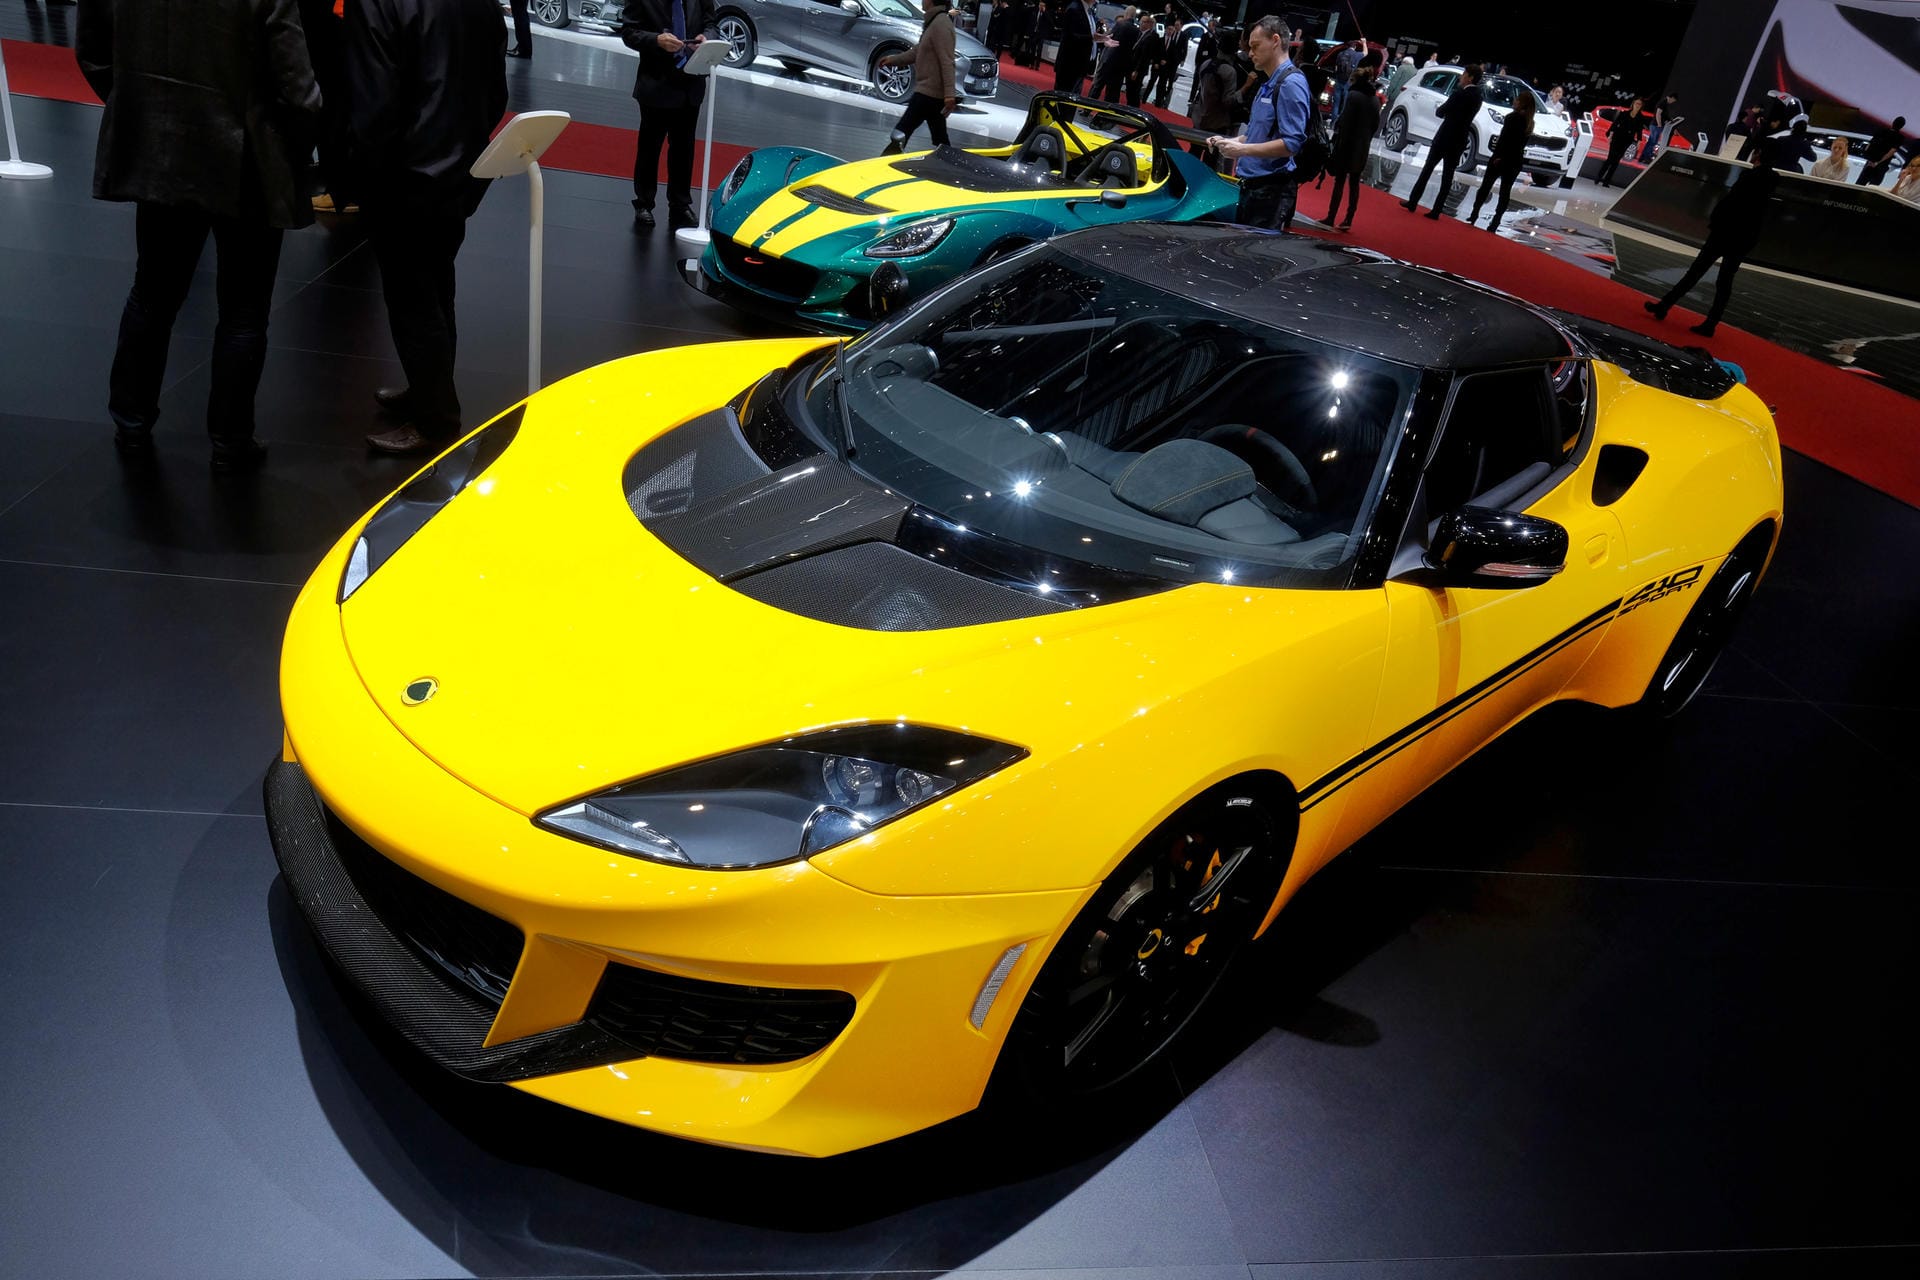 Der neue Lotus Evora Sport 410 und wird vom weiterentwickelten 3,5-Liter-Kompressormotor befeuert. Damit beschleunigt der 416 PS starke Lotus in 4,1 Sekunden von null auf 100 km/h und erreicht eine Höchstgeschwindigkeit von 300 km/h.